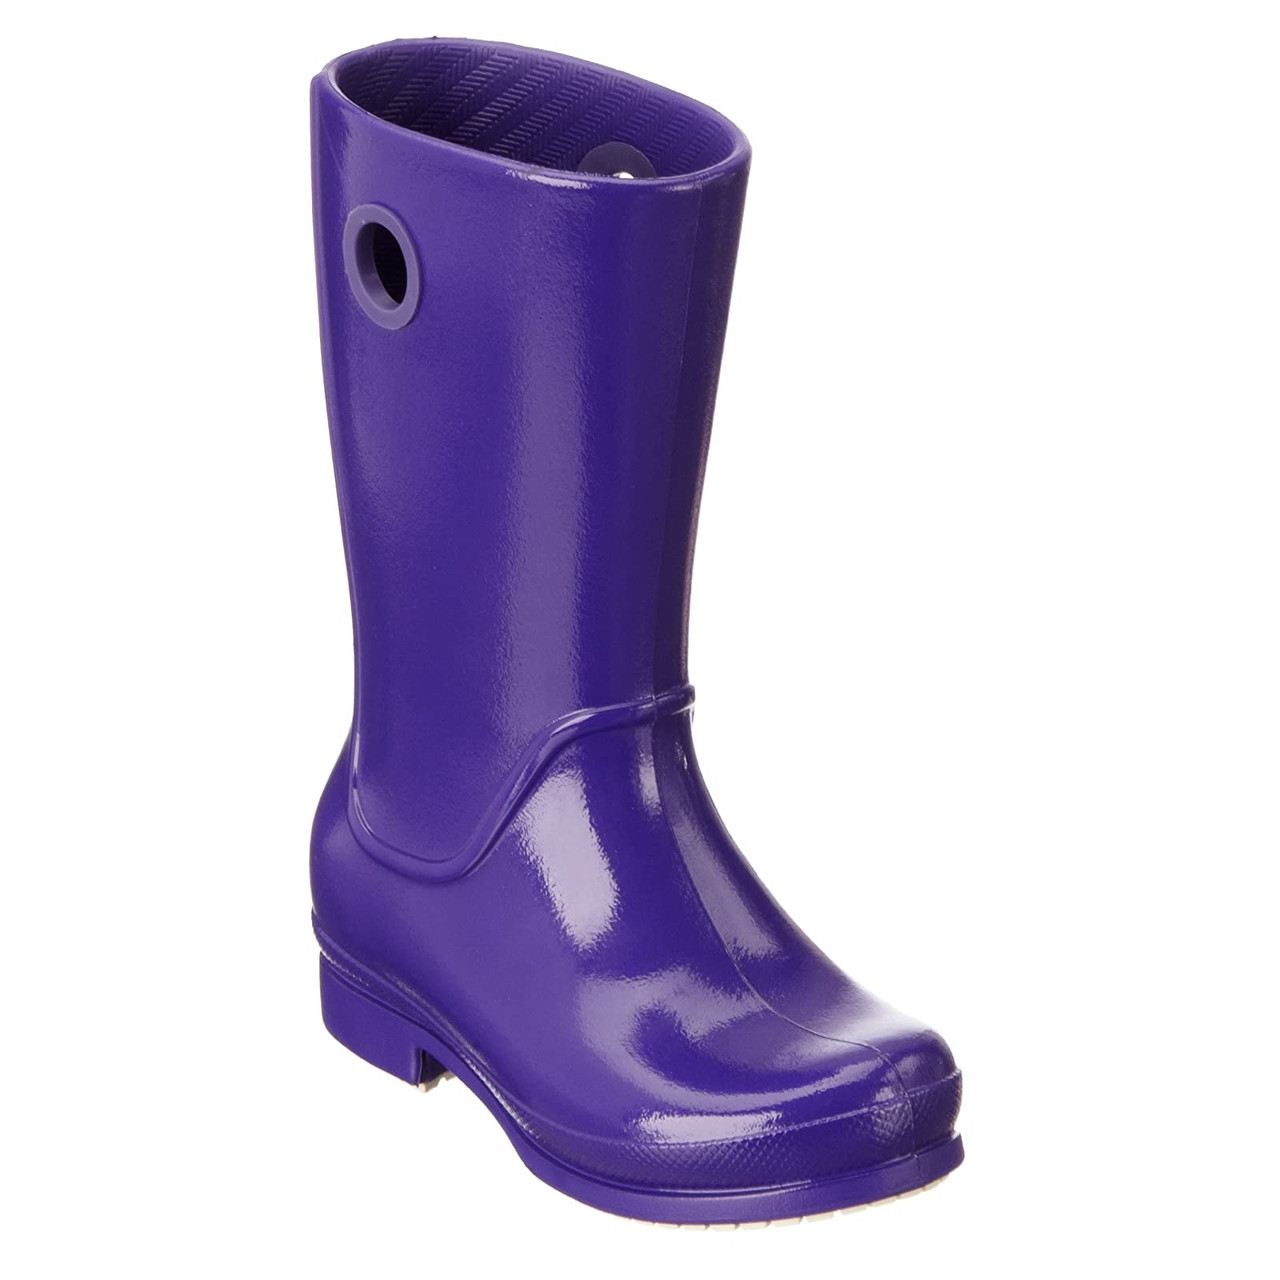 Чоботи гумові для дівчинки дощовики глянцеві / Crocs Girls Wellie Patent Rain Boot (12470), Фіолетові 26